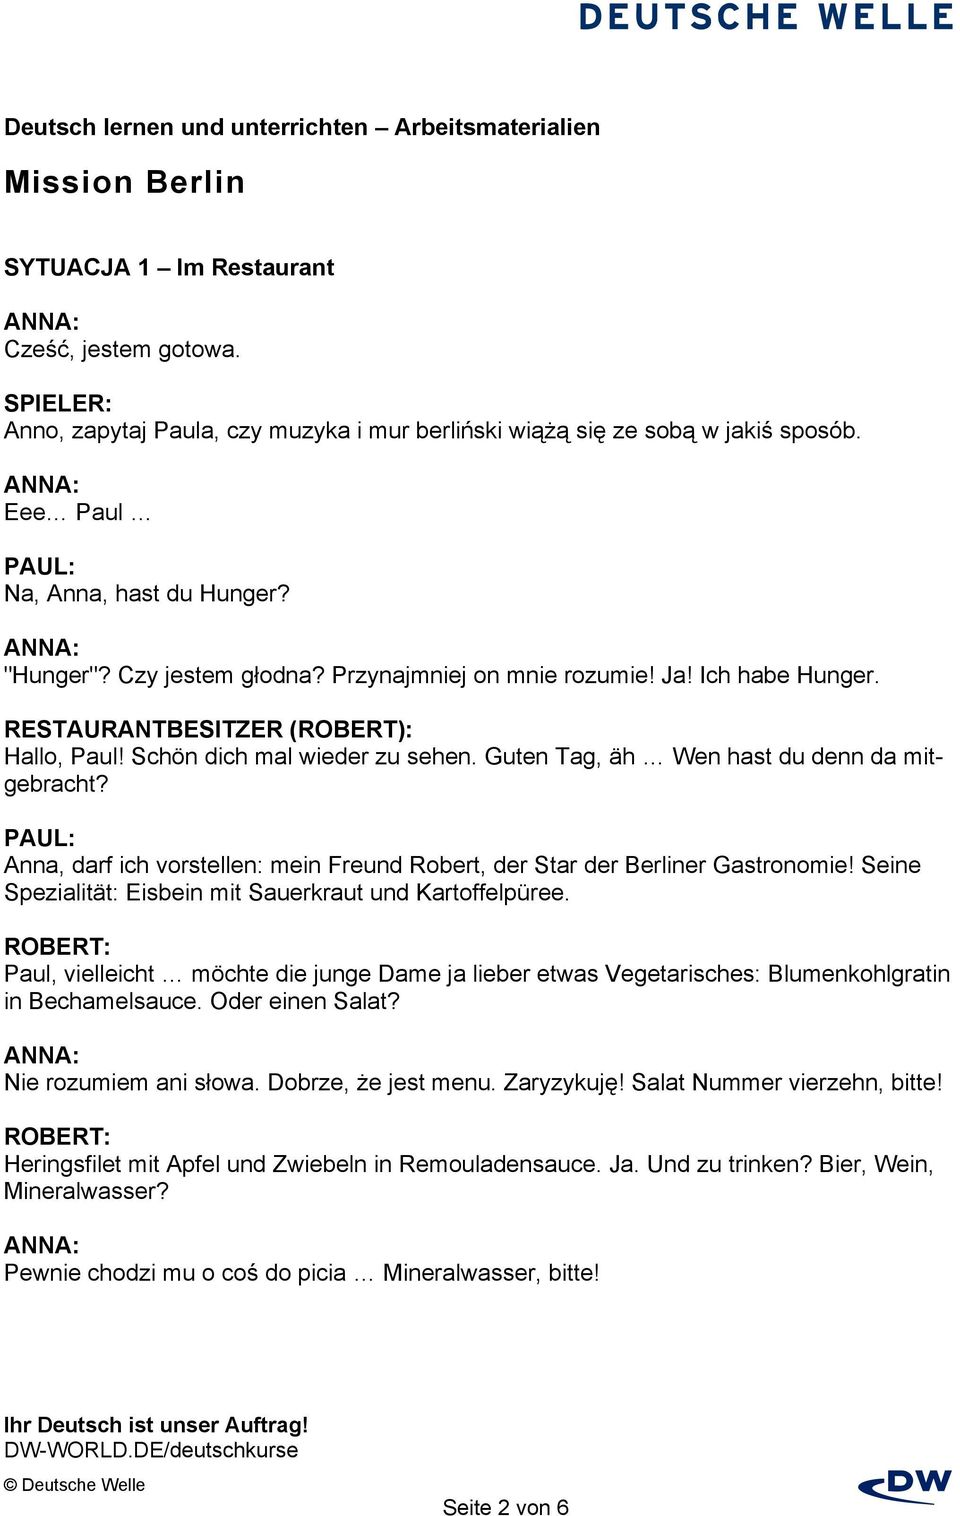 Anna, darf ich vorstellen: mein Freund Robert, der Star der Berliner Gastronomie! Seine Spezialität: Eisbein mit Sauerkraut und Kartoffelpüree.